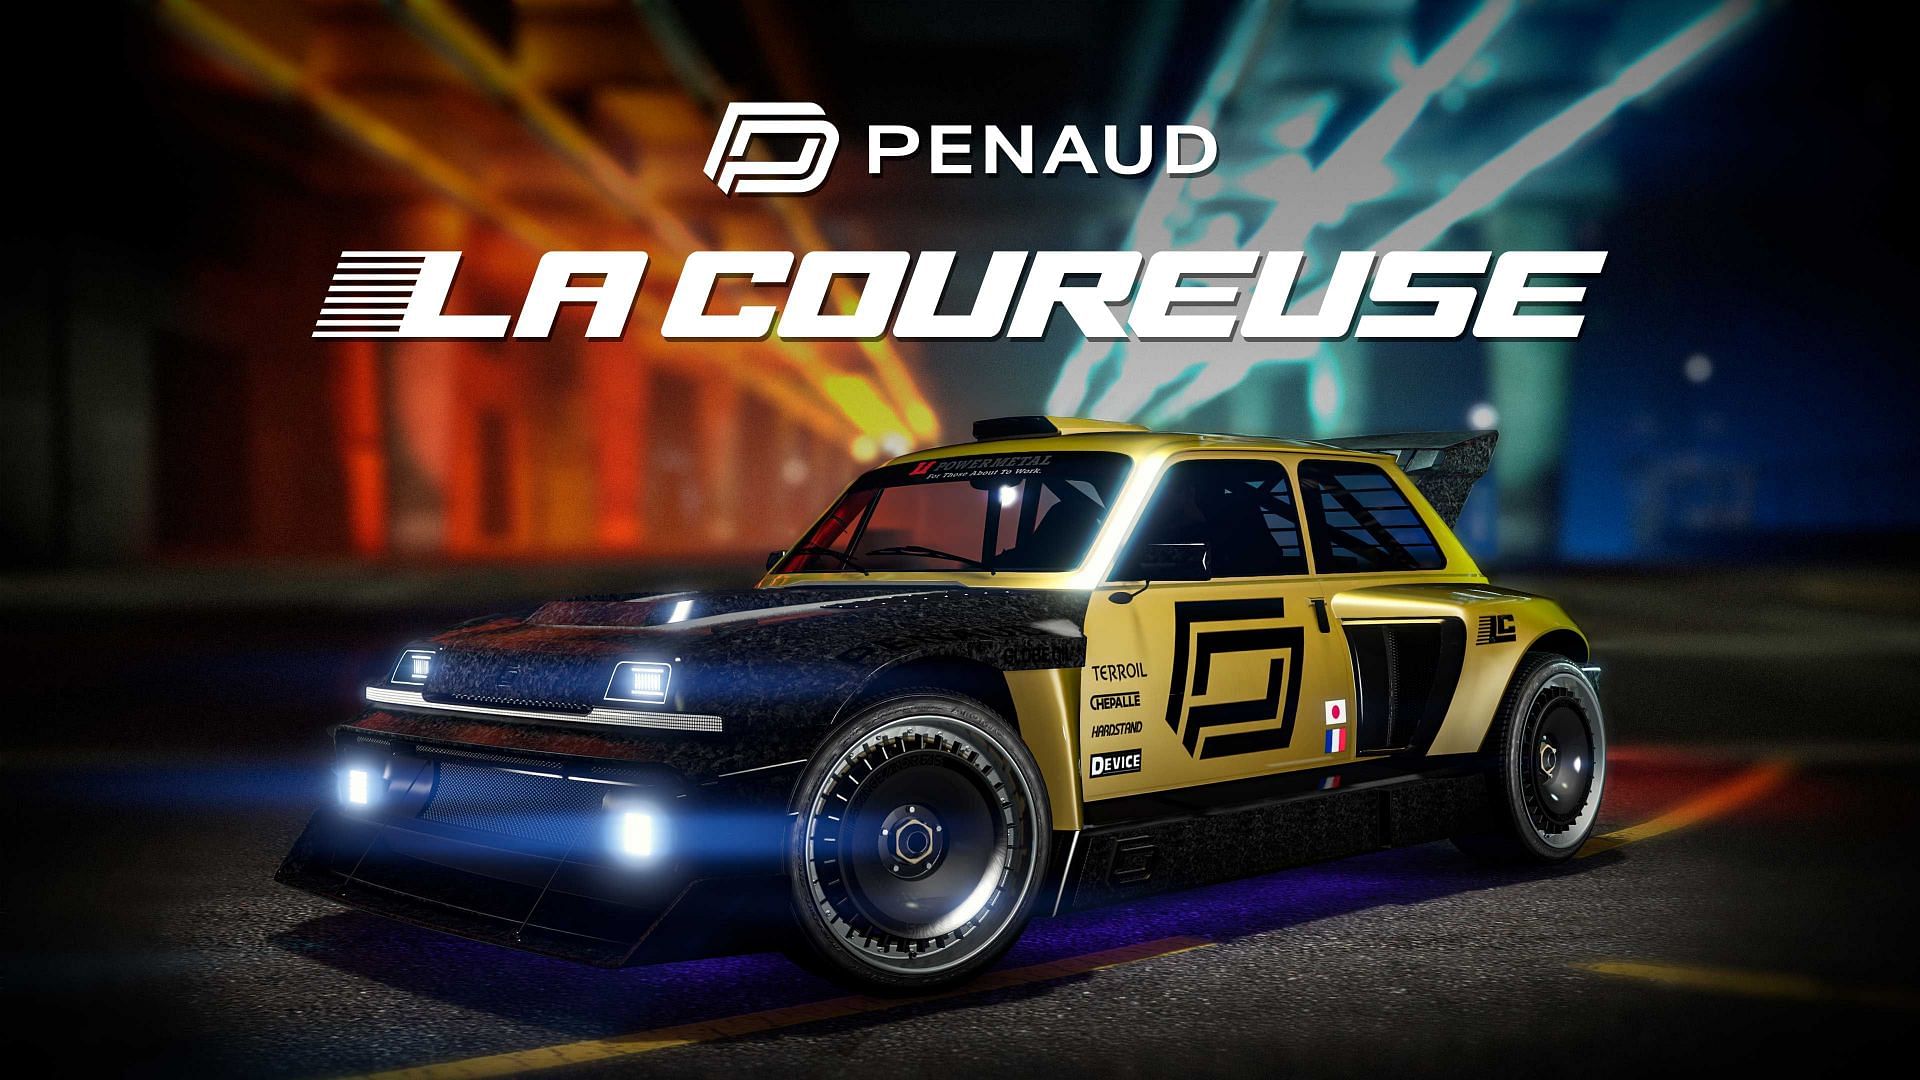 The Penaud La Coureuse in GTA Online (Image via Rockstar Games)